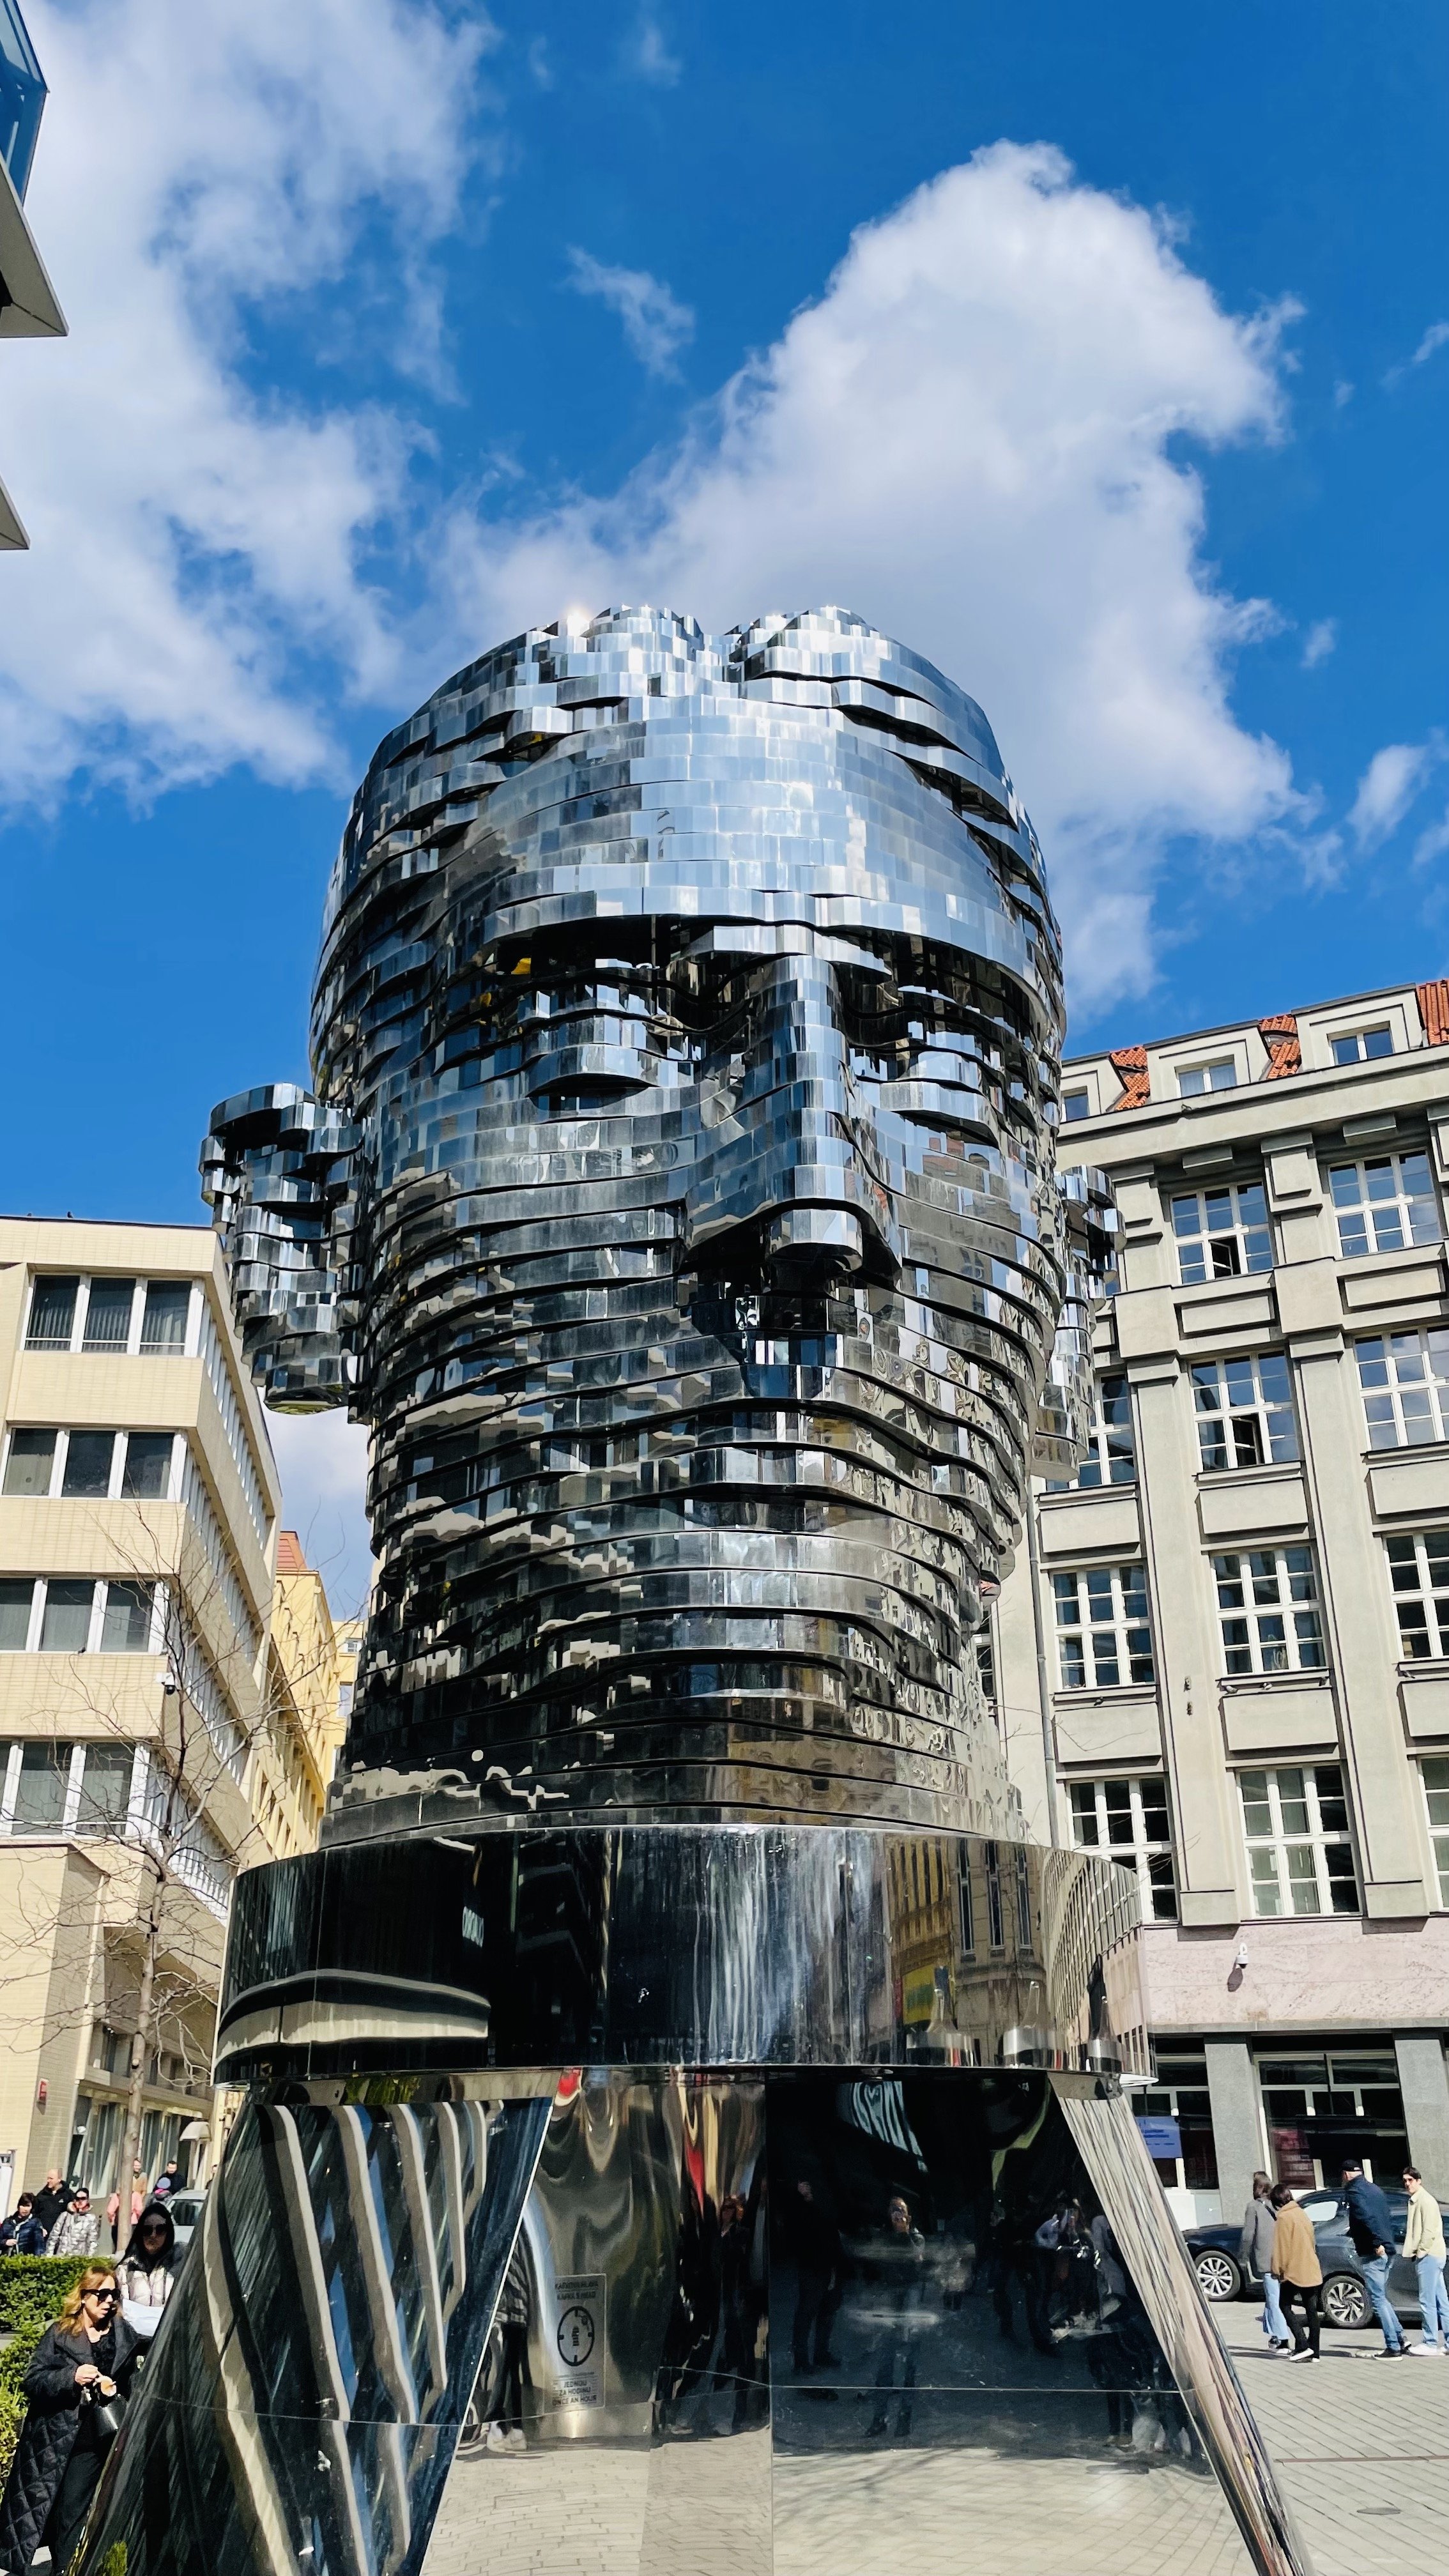 Franz Kafka - Rotating Head by Cerny